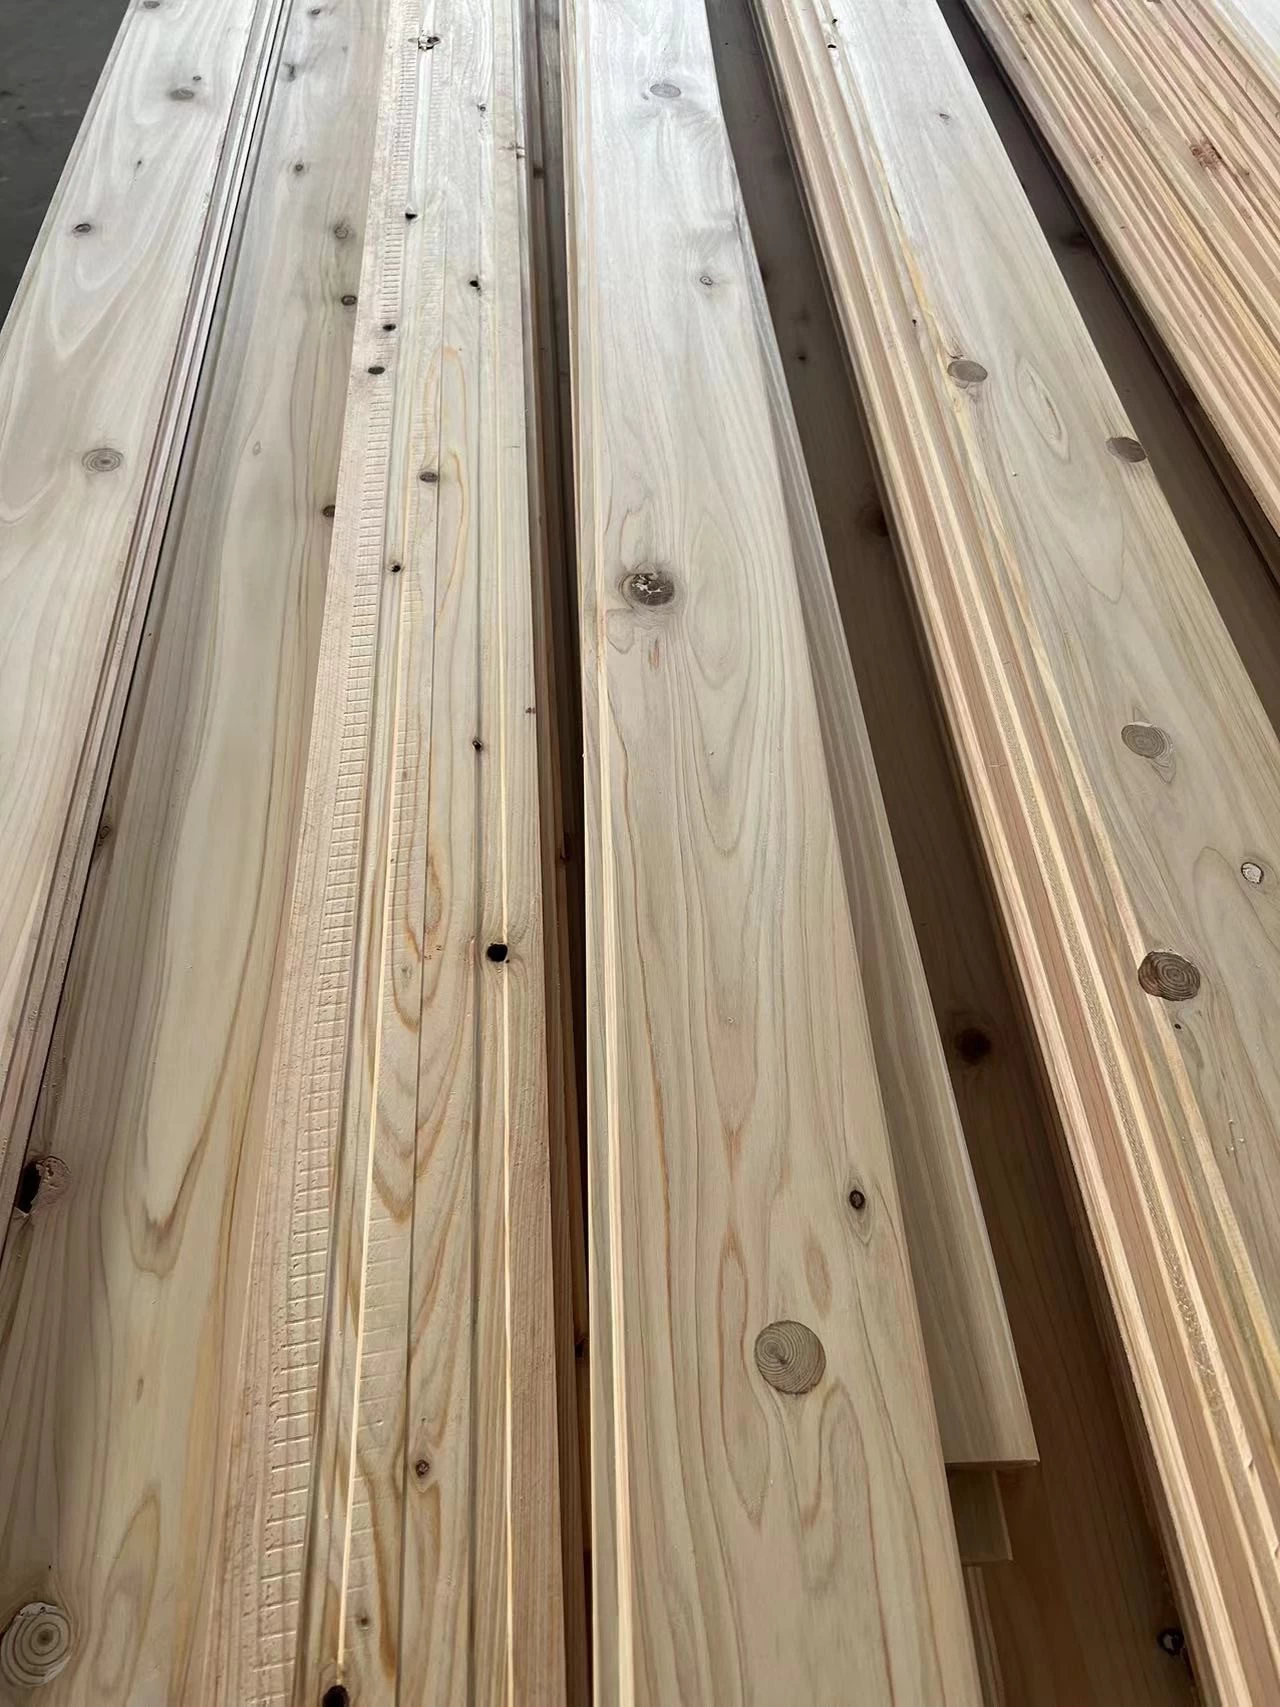 Cypress փայտից պատի վահանակներ